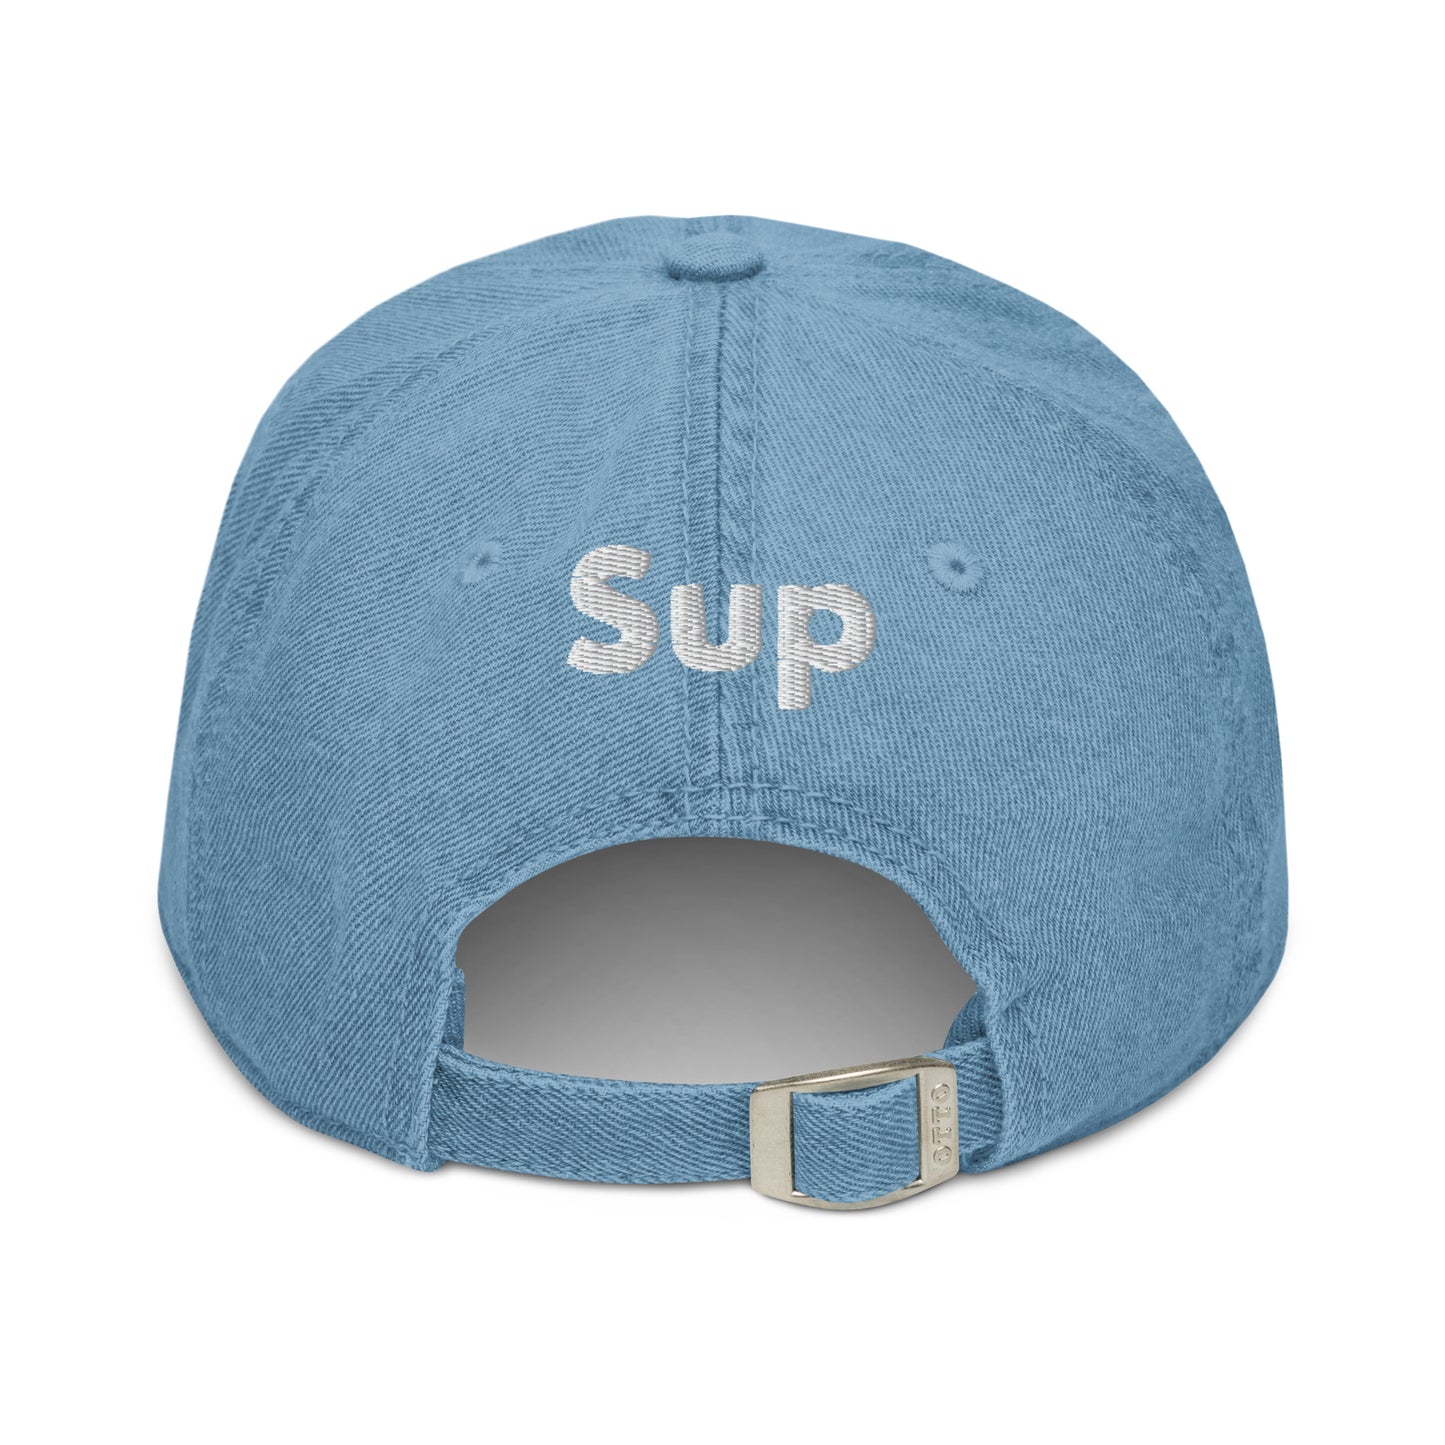 Hi SUP USA Hat in Denim